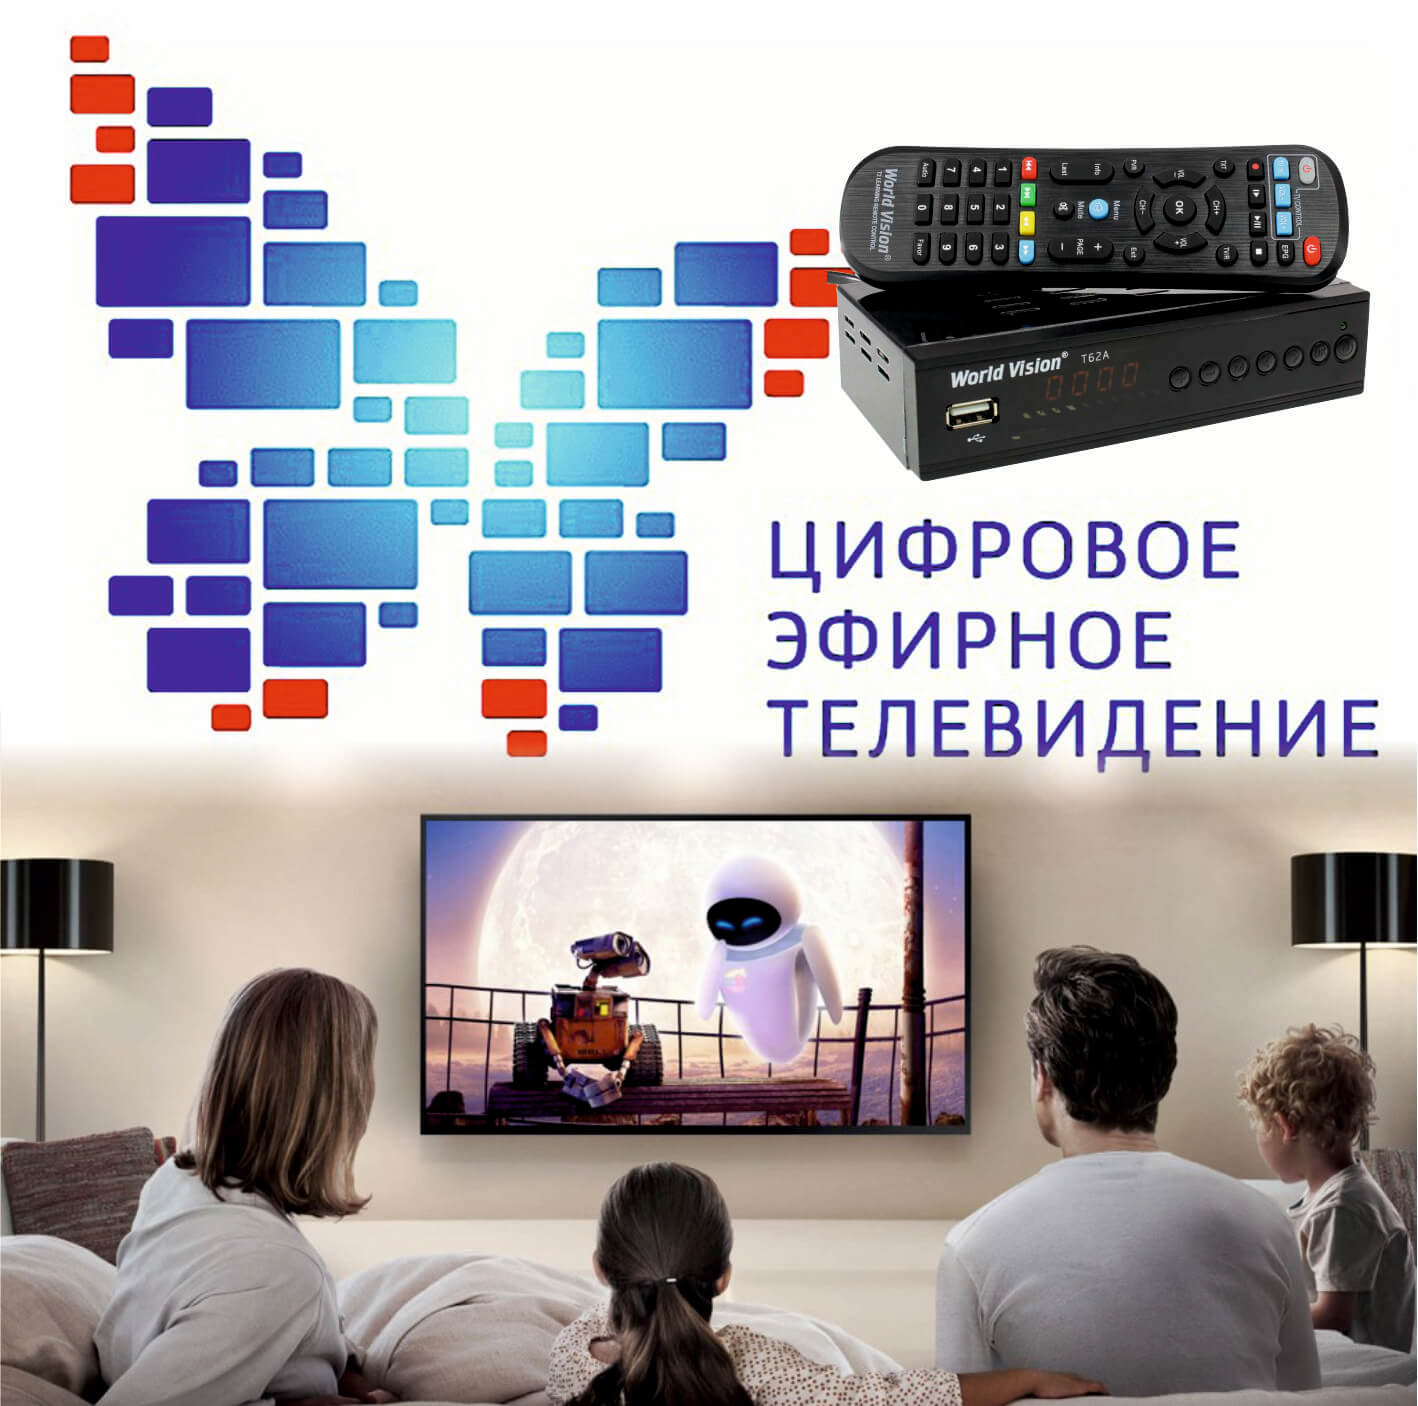 Как подключить DVB T2? Цифровое эфирное телевидение своими руками